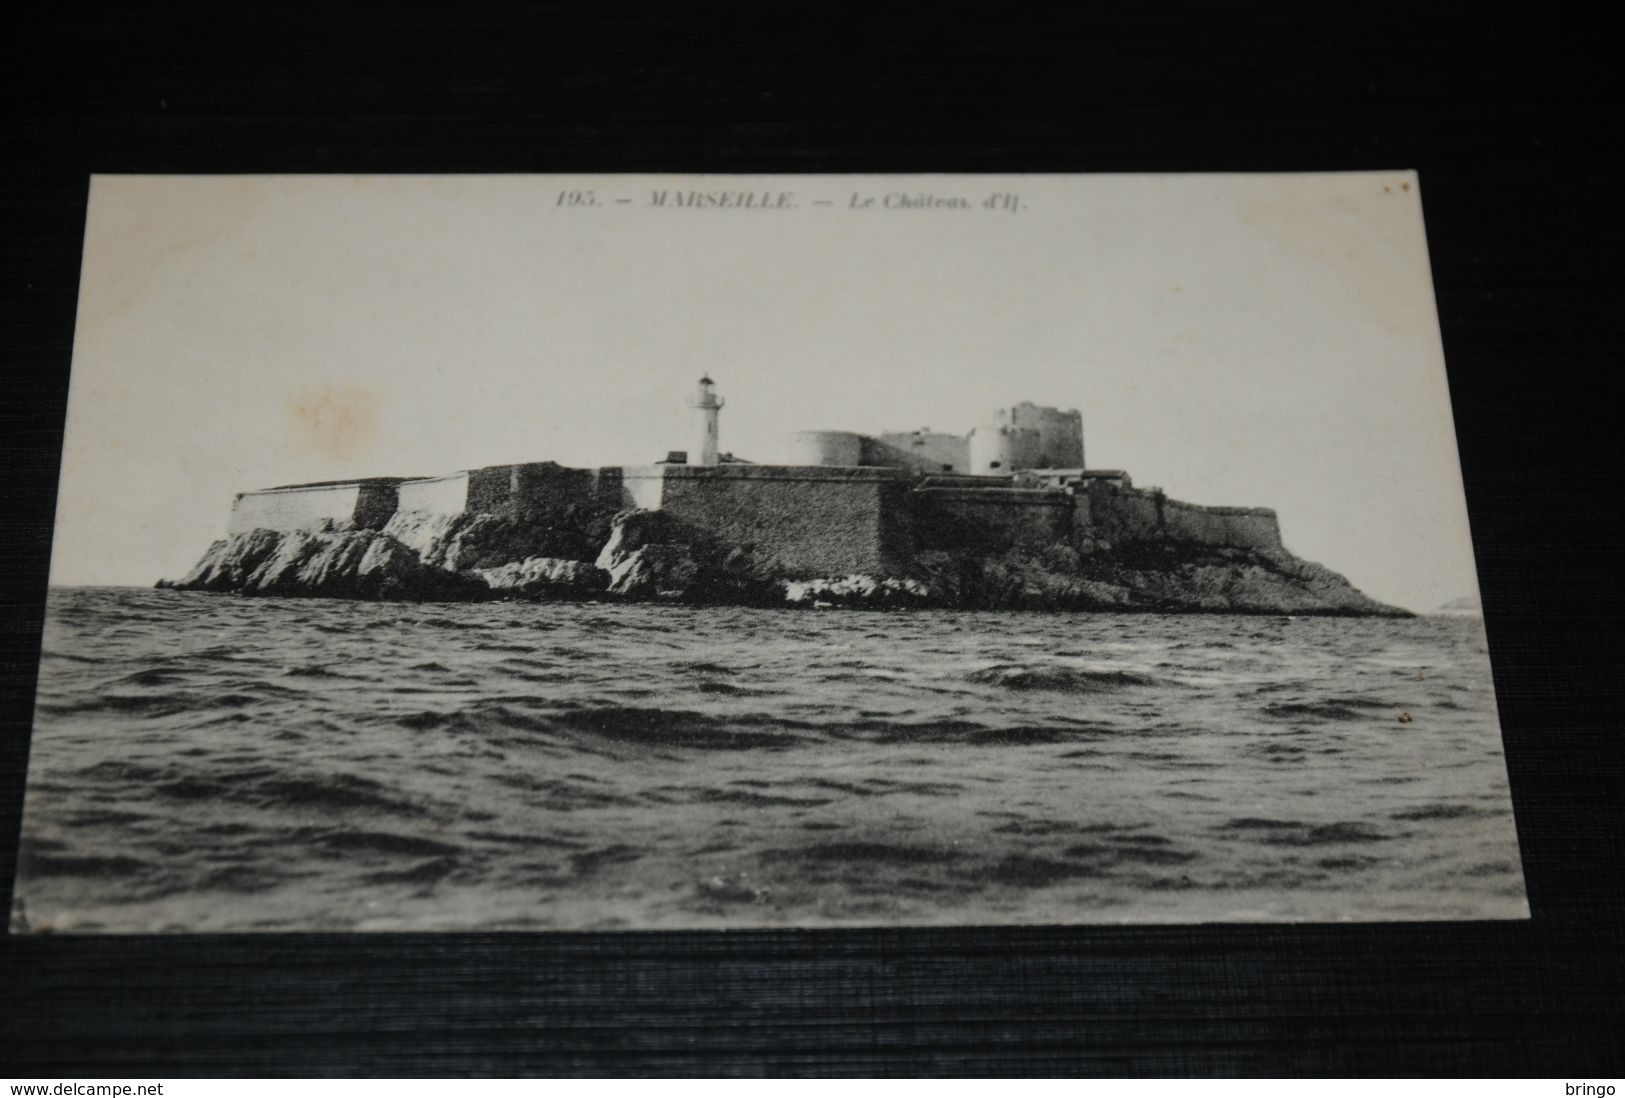 17691-           MARSEILLE, LE CHATEAU D'IL - Castillo De If, Archipiélago De Frioul, Islas...